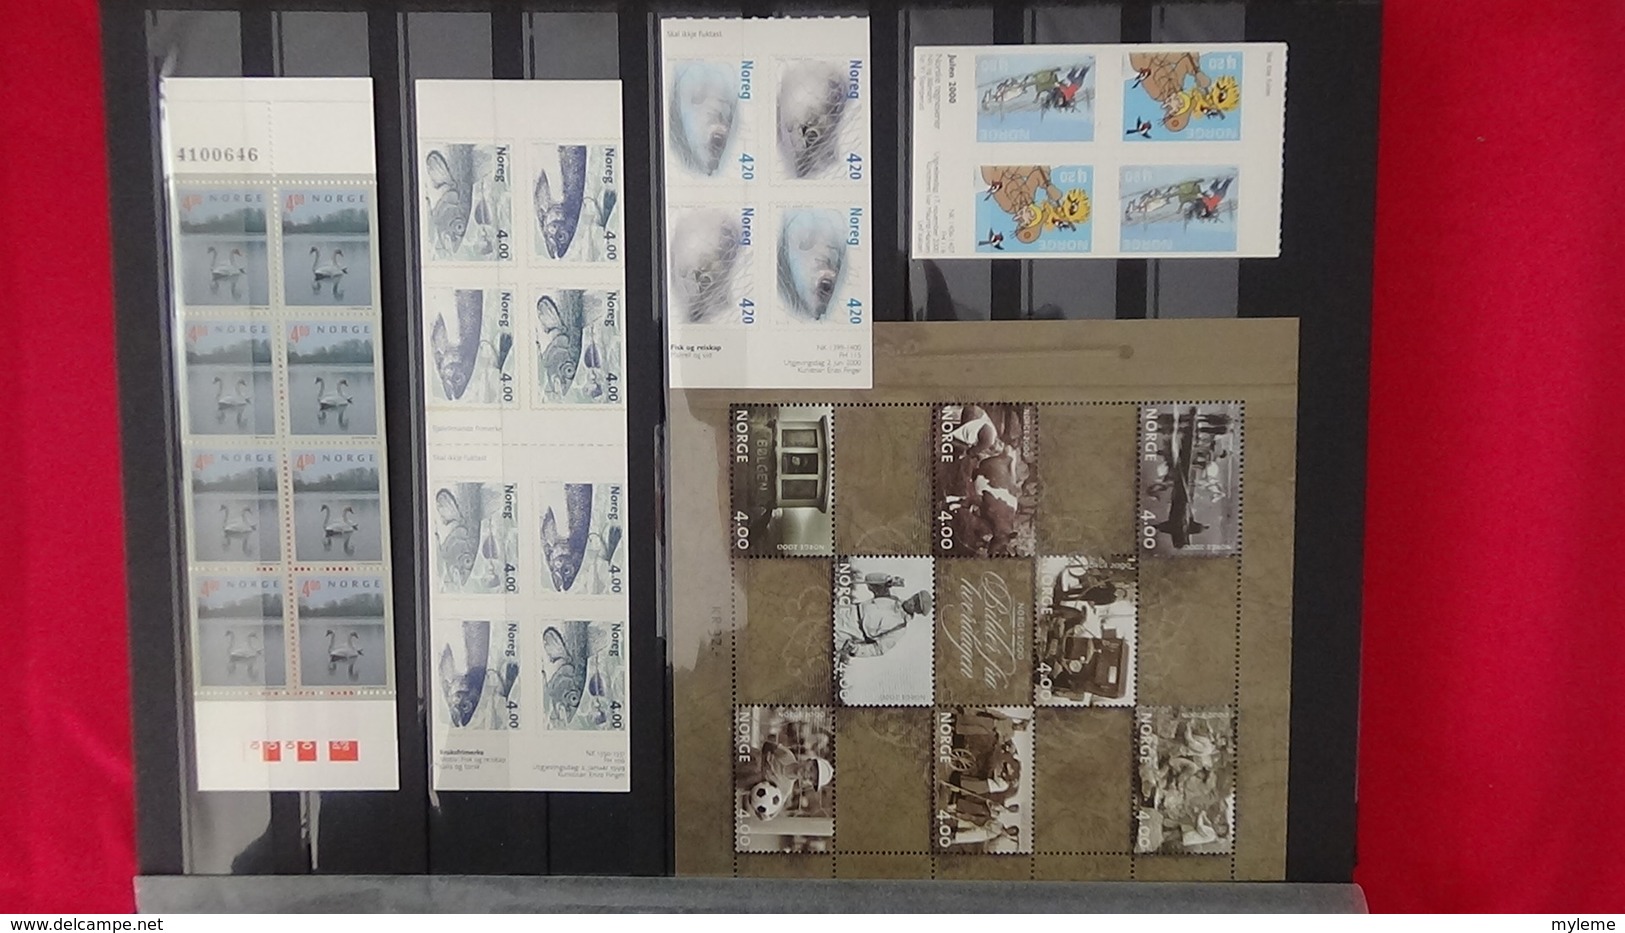 Superbe collection ** timbres, carnets et blocs de Aland et Norvège. Belle faciale  Port offert dès 50 EUROS d'achats